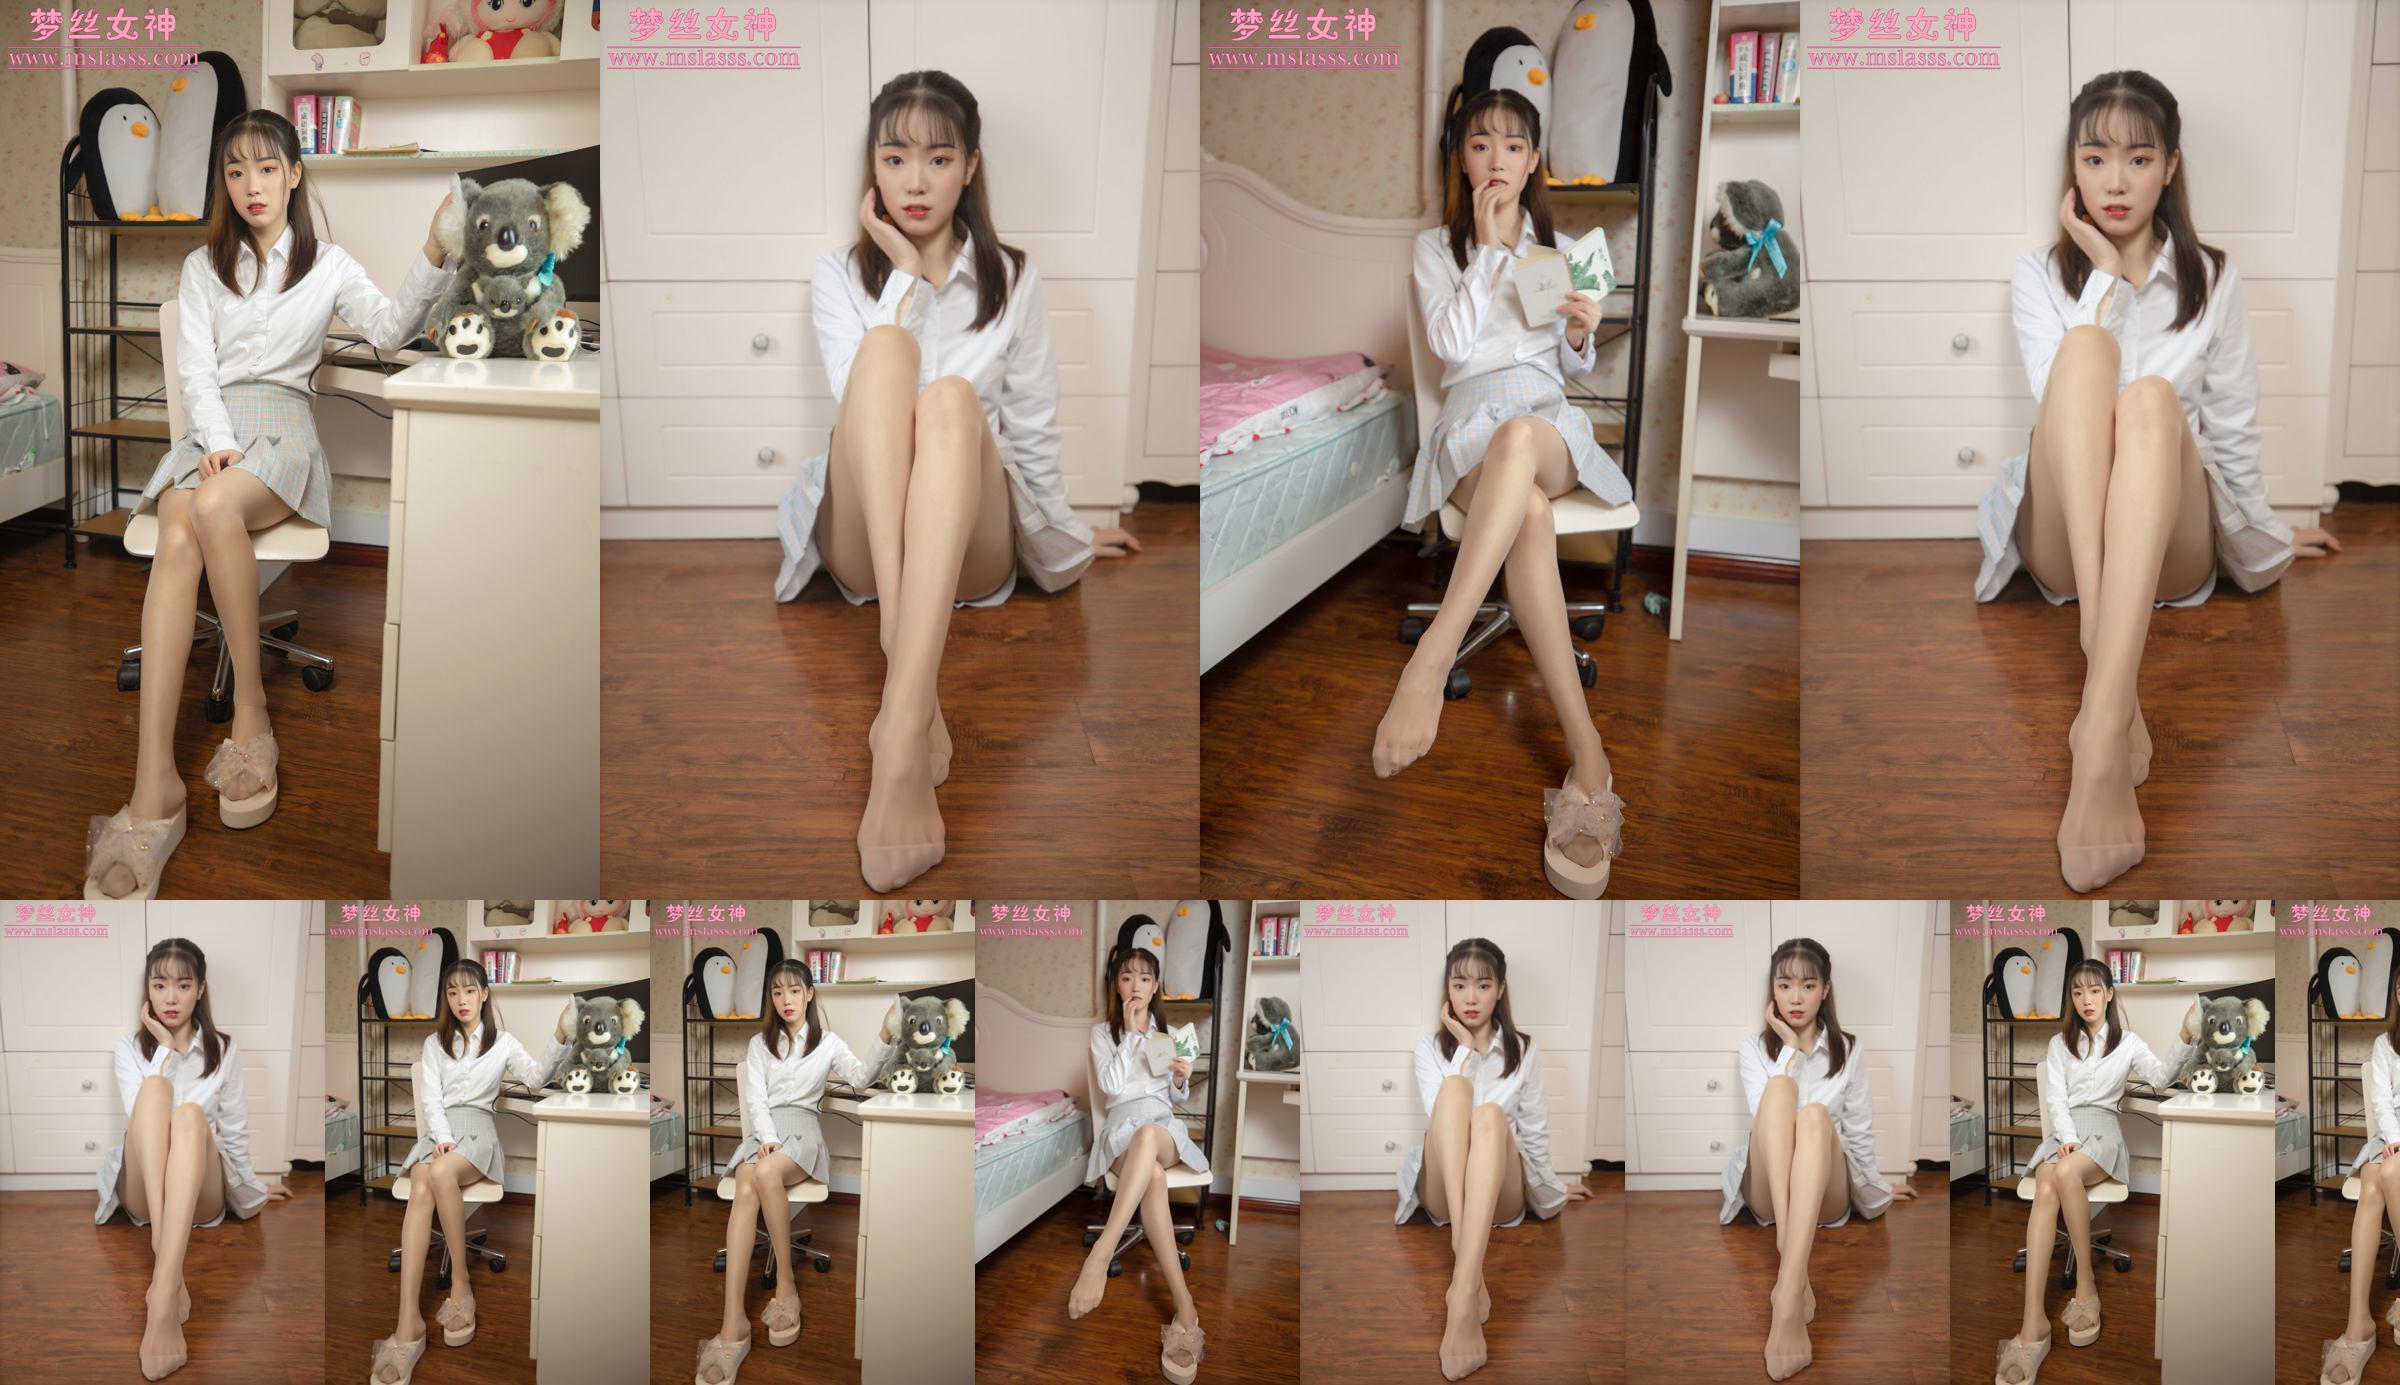 [MSLASS] Zhang Qiying nữ thần người mẫu mới No.668827 Trang 1